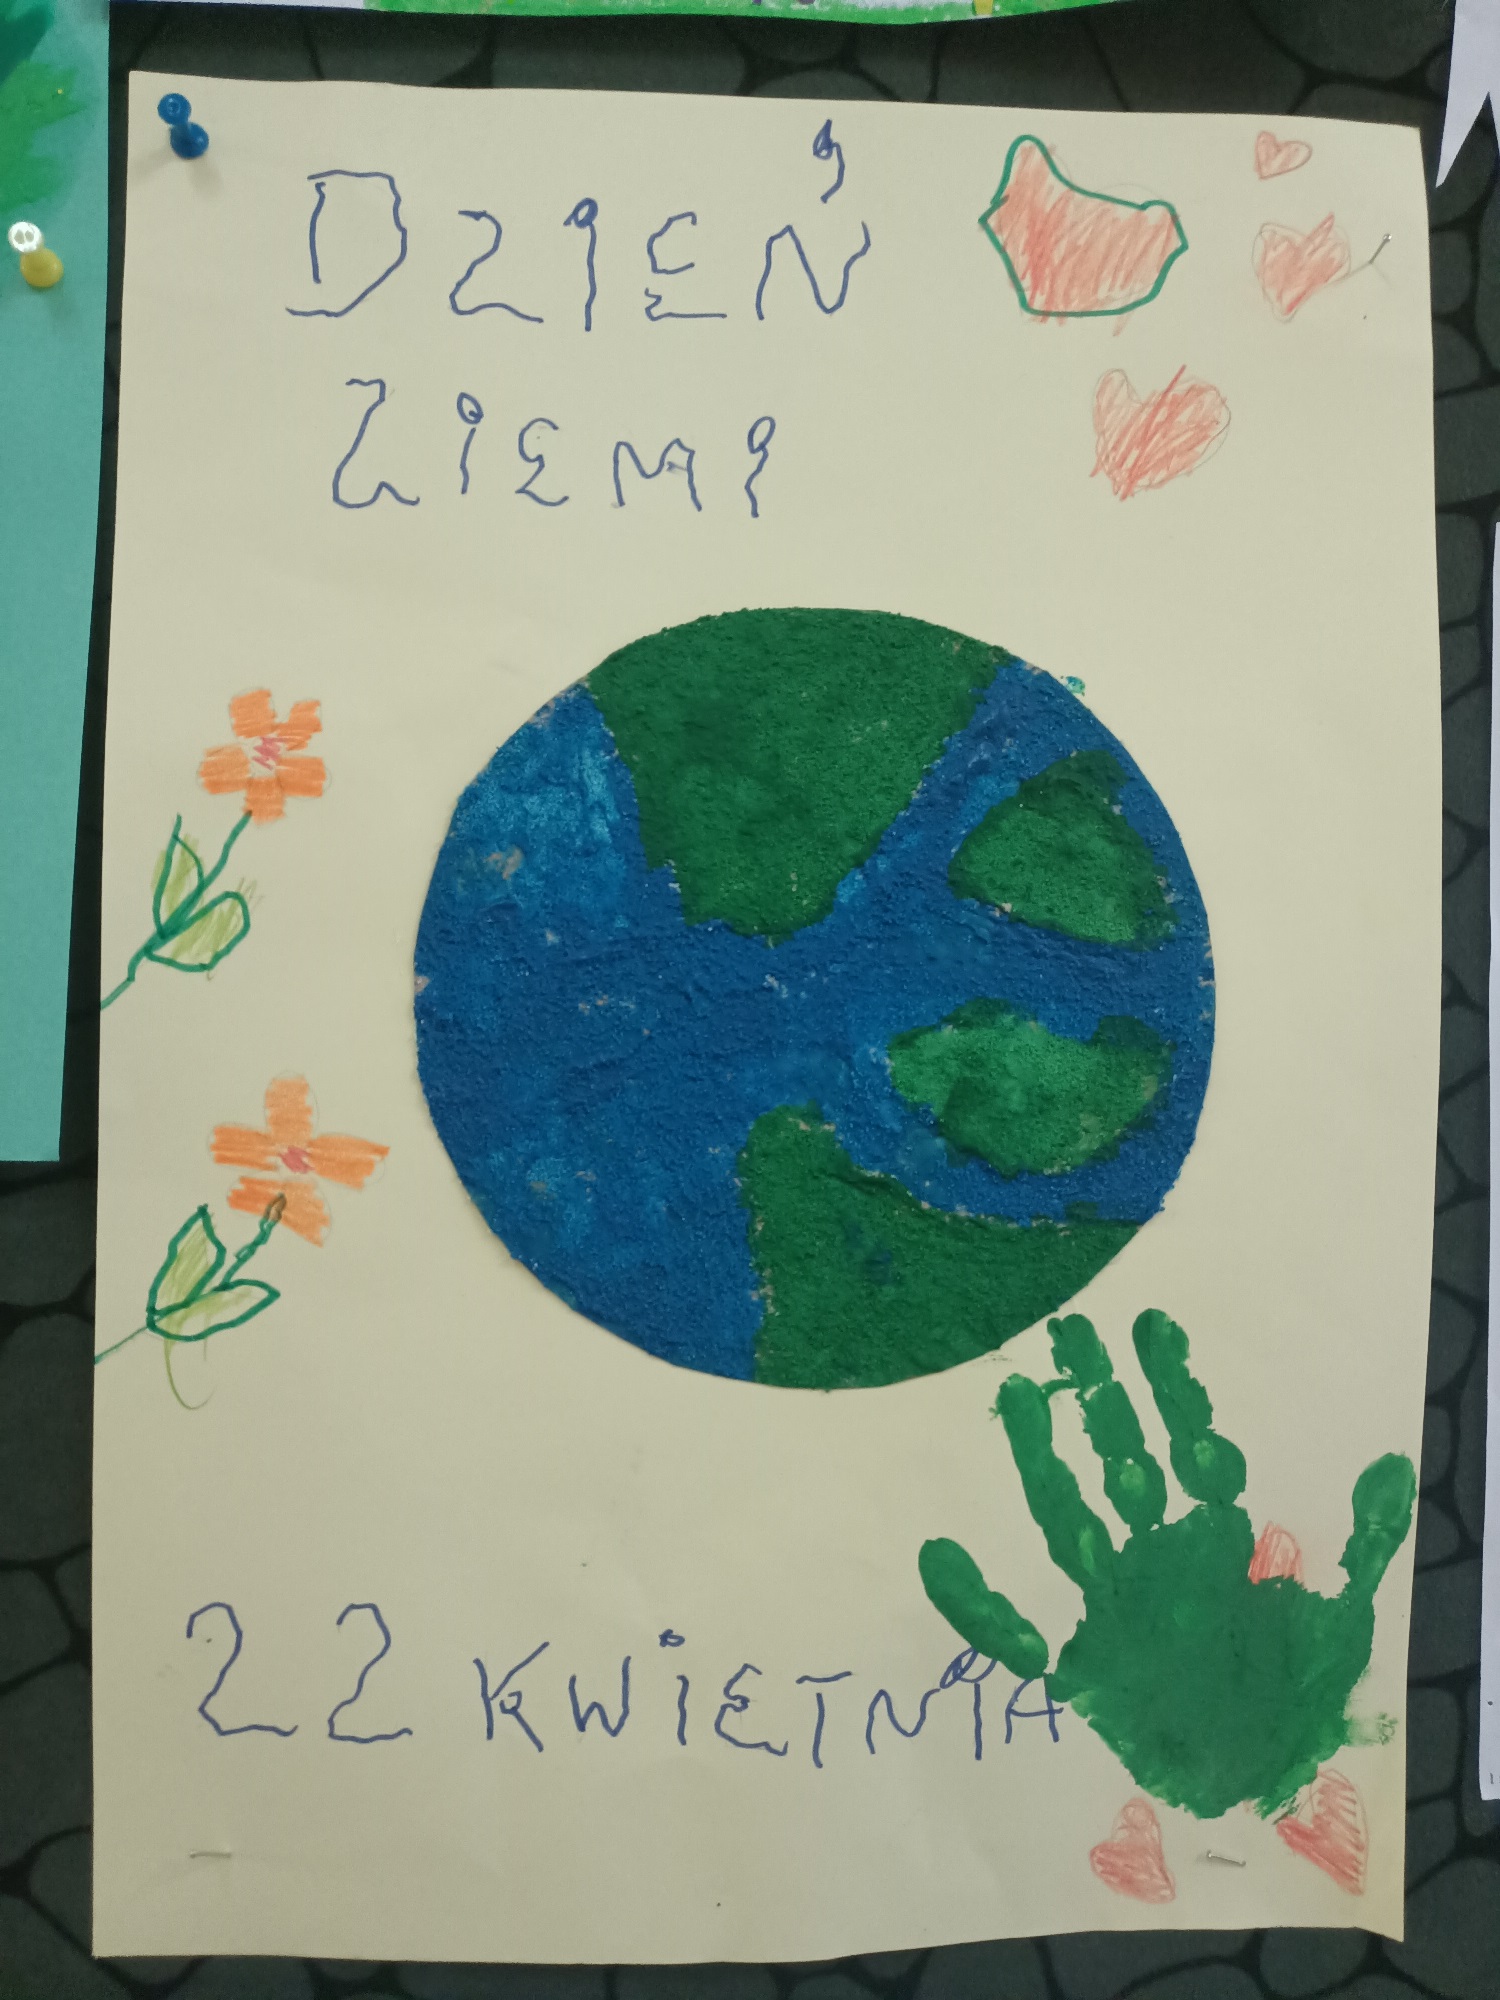 Obrazek planety Ziemia, zielonego odcisku ręki oraz napisu Dzień Ziemi